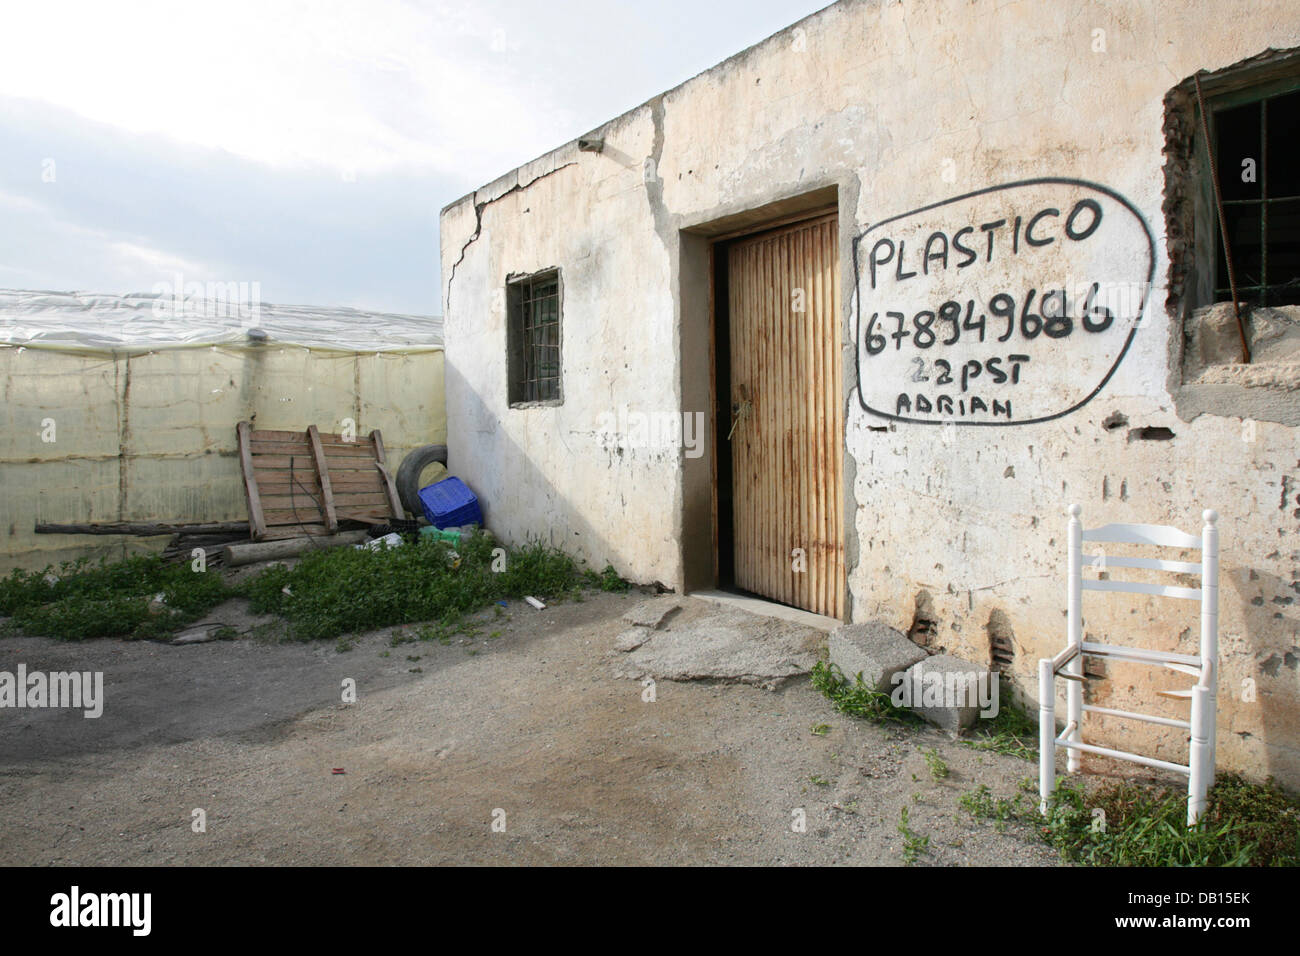 Eine schreiben an eine Hauswand bietet Hilfe für den Bau von Kunststoff  Gewächshäuser in El Ejido, Spanien, 20. Oktober 2006. Die so genannte "Meer  der Plastik" bestehend aus 27.000 Gewächshäuser umfasst mehr